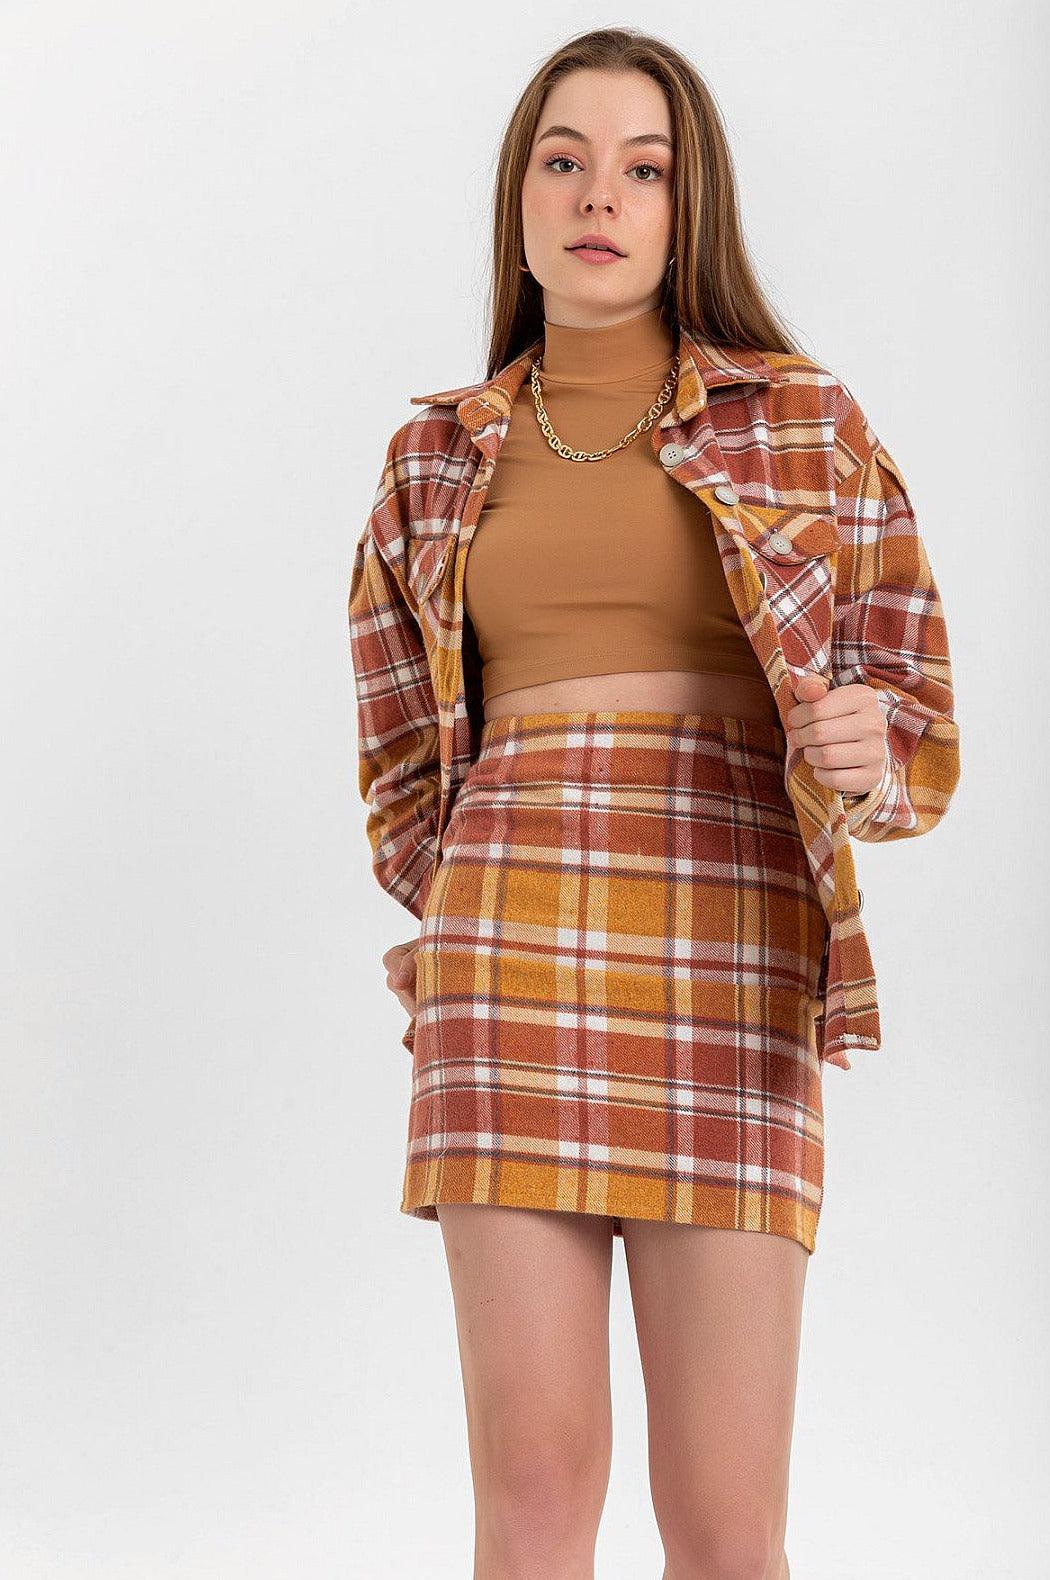 Tight Fit Striped Short Mini Skirt - Brown